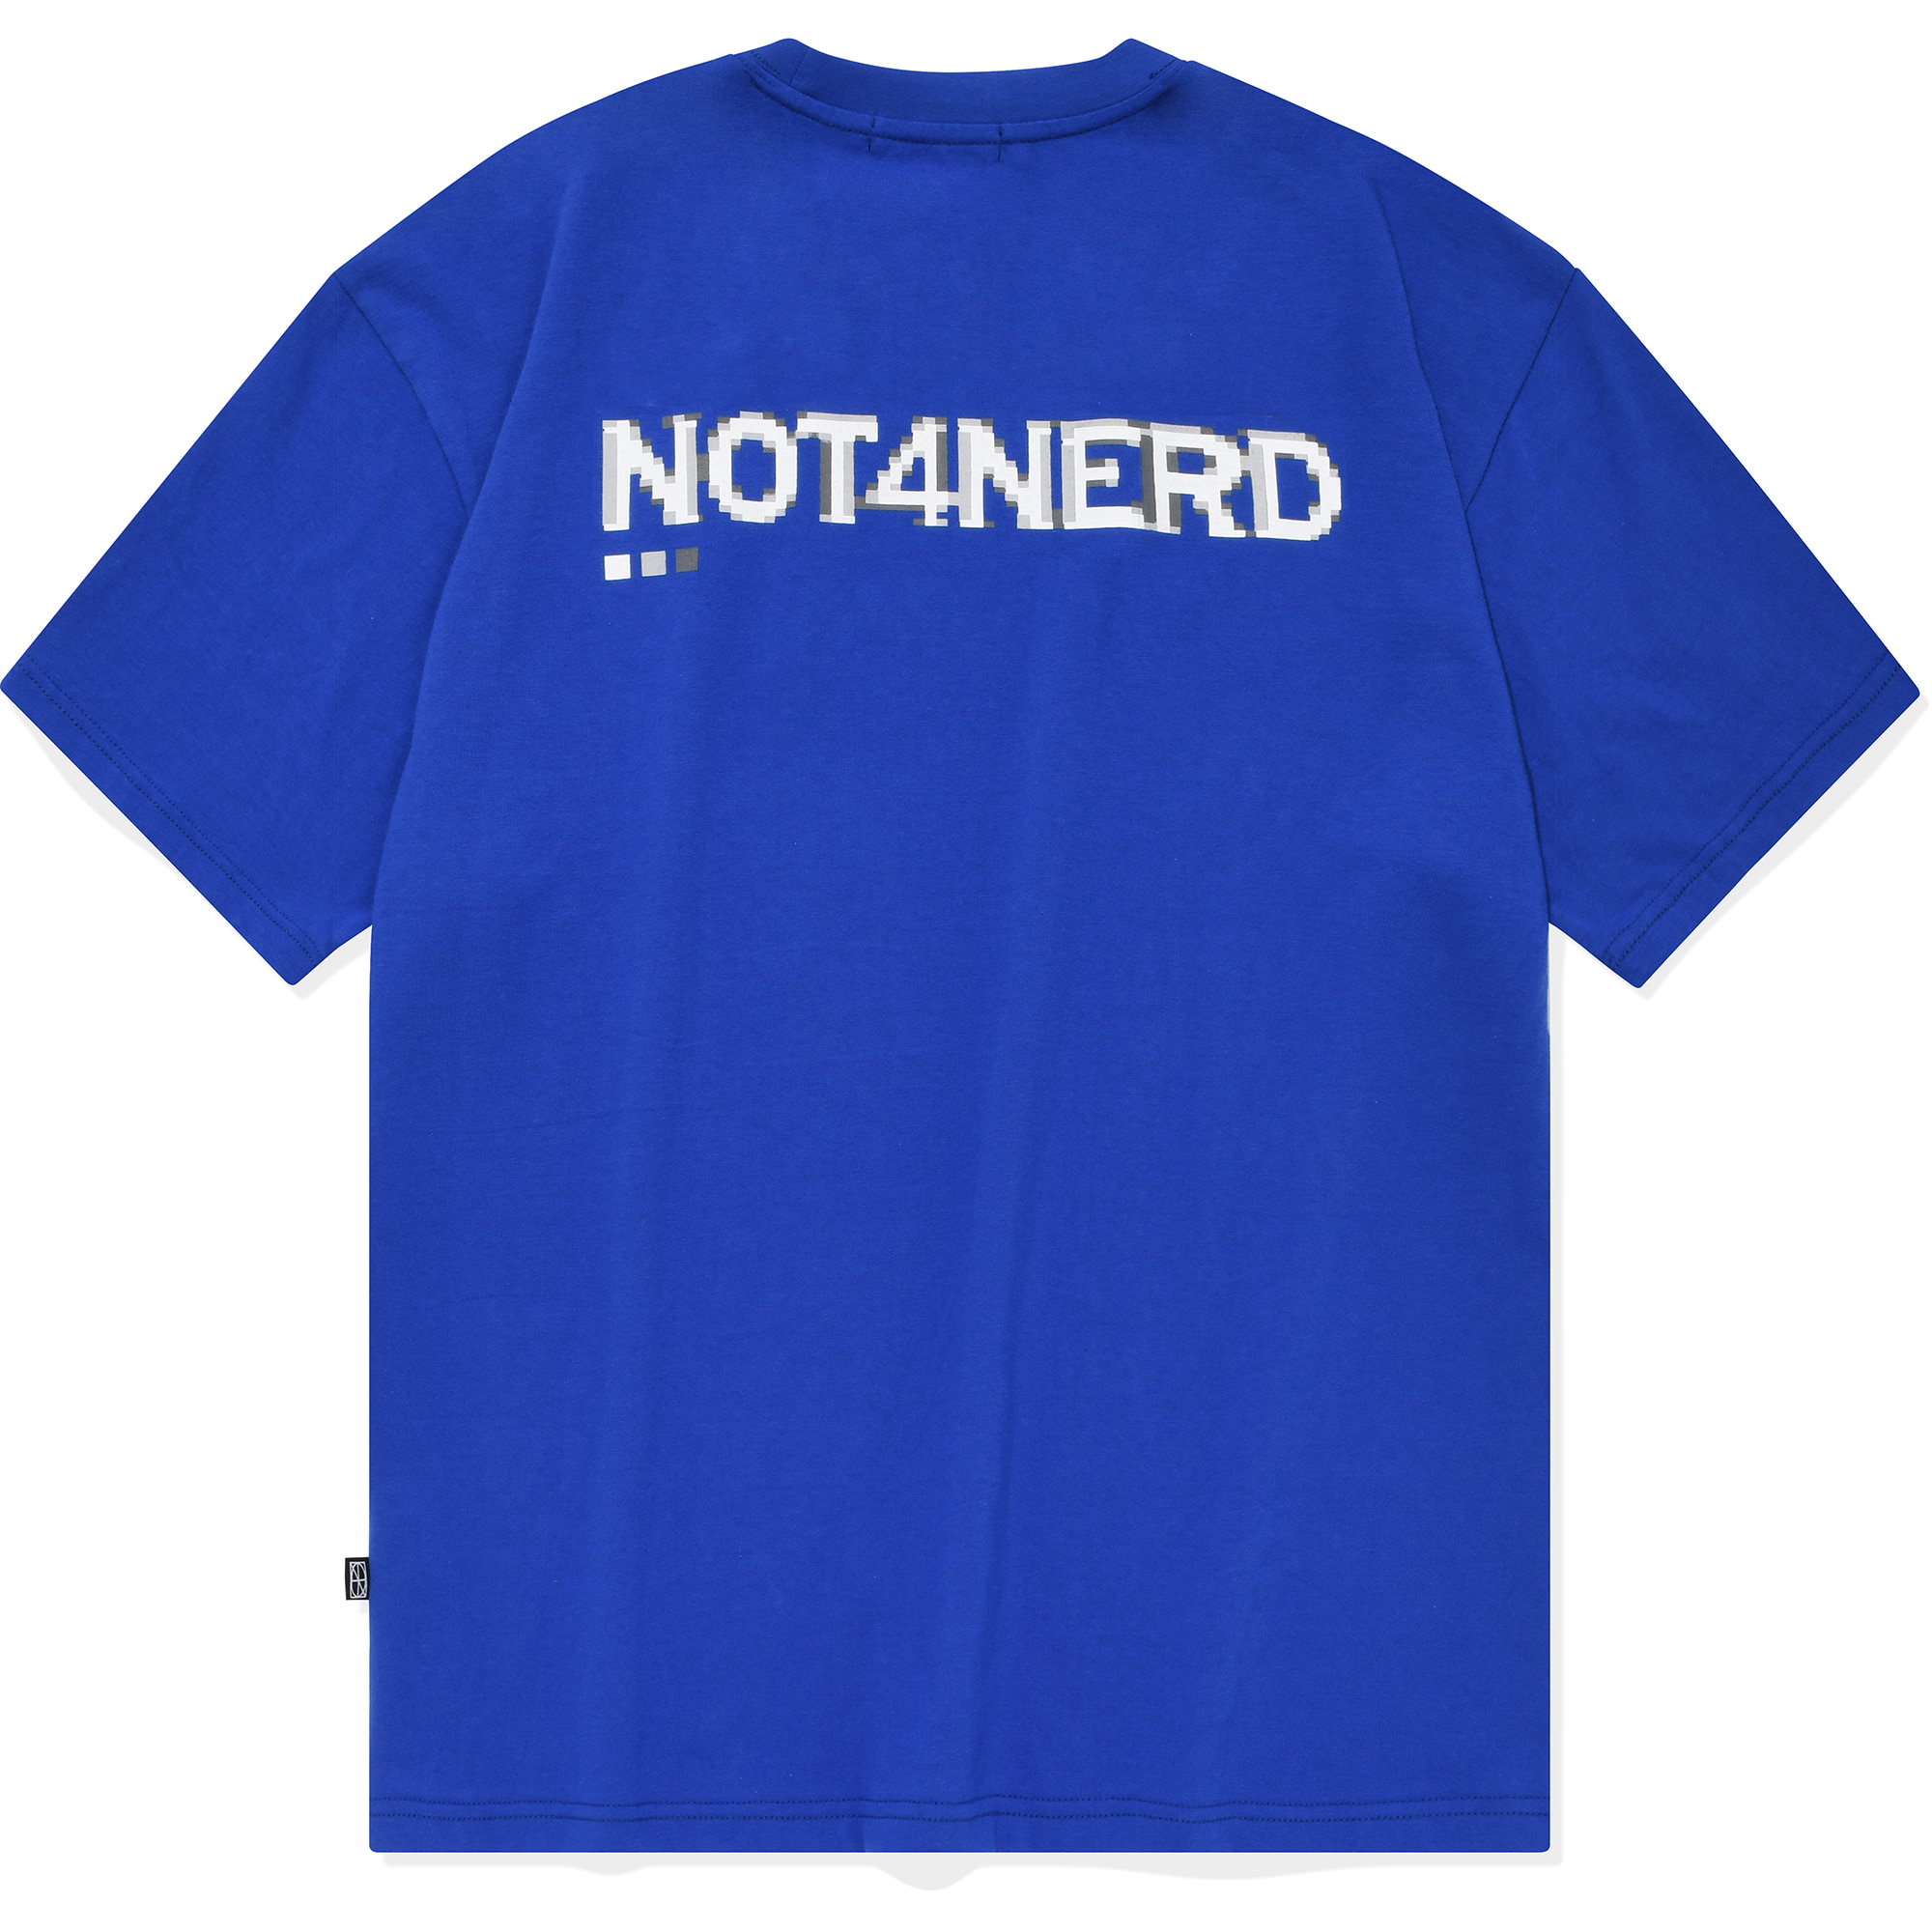 Dot Pc T-Shirts Blue,NOT4NERD